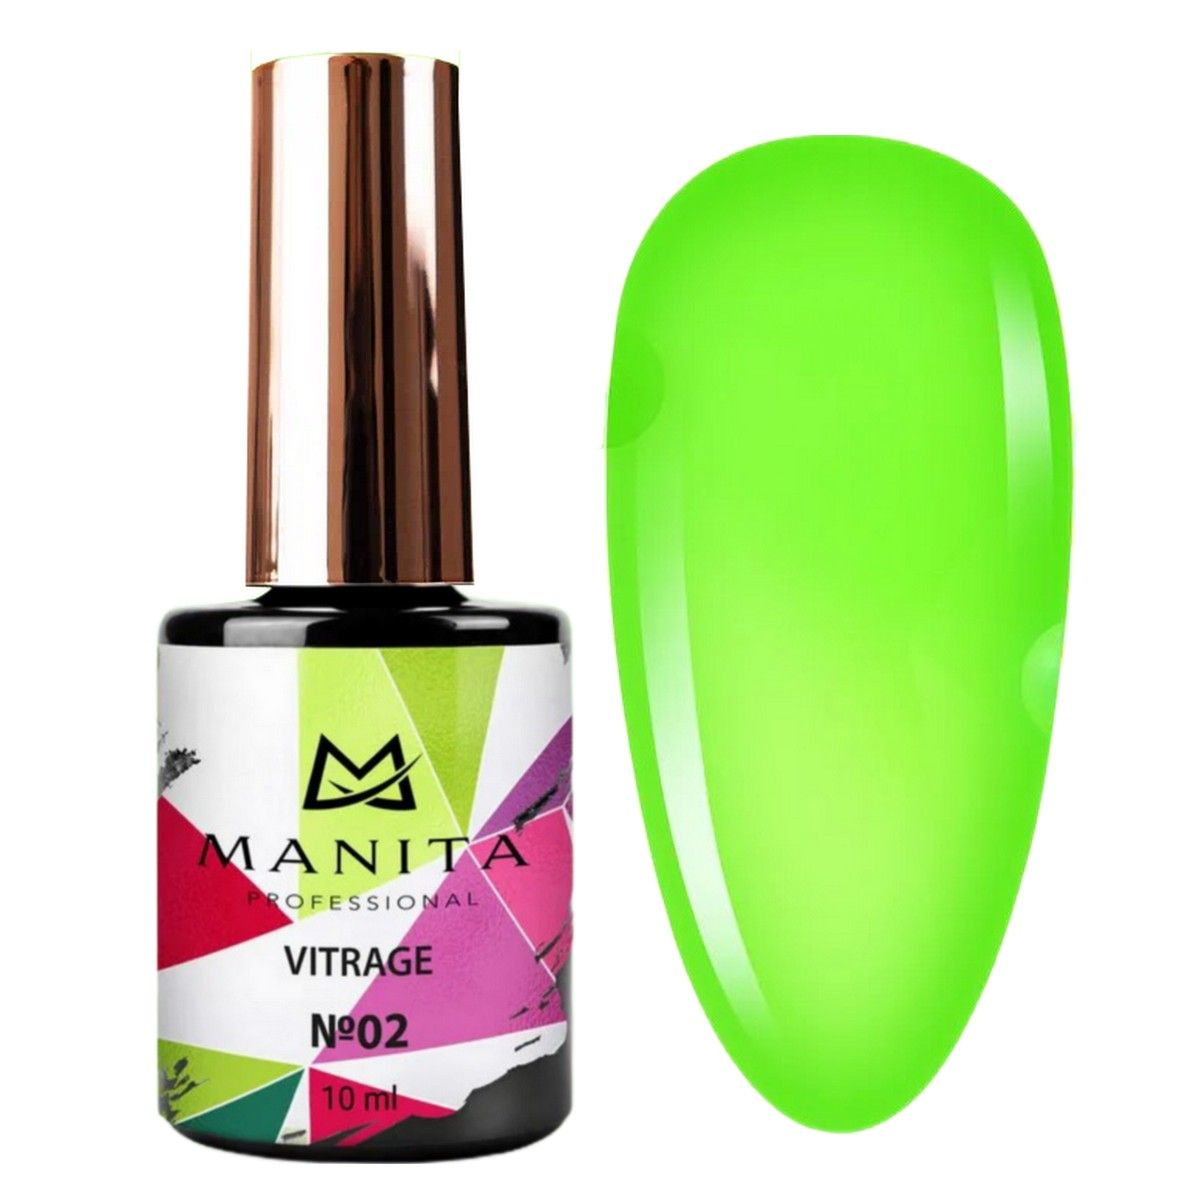 Гель-лак для ногтей Manita Professional c эффектом витража Vitrage №02, зеленый, 10 мл